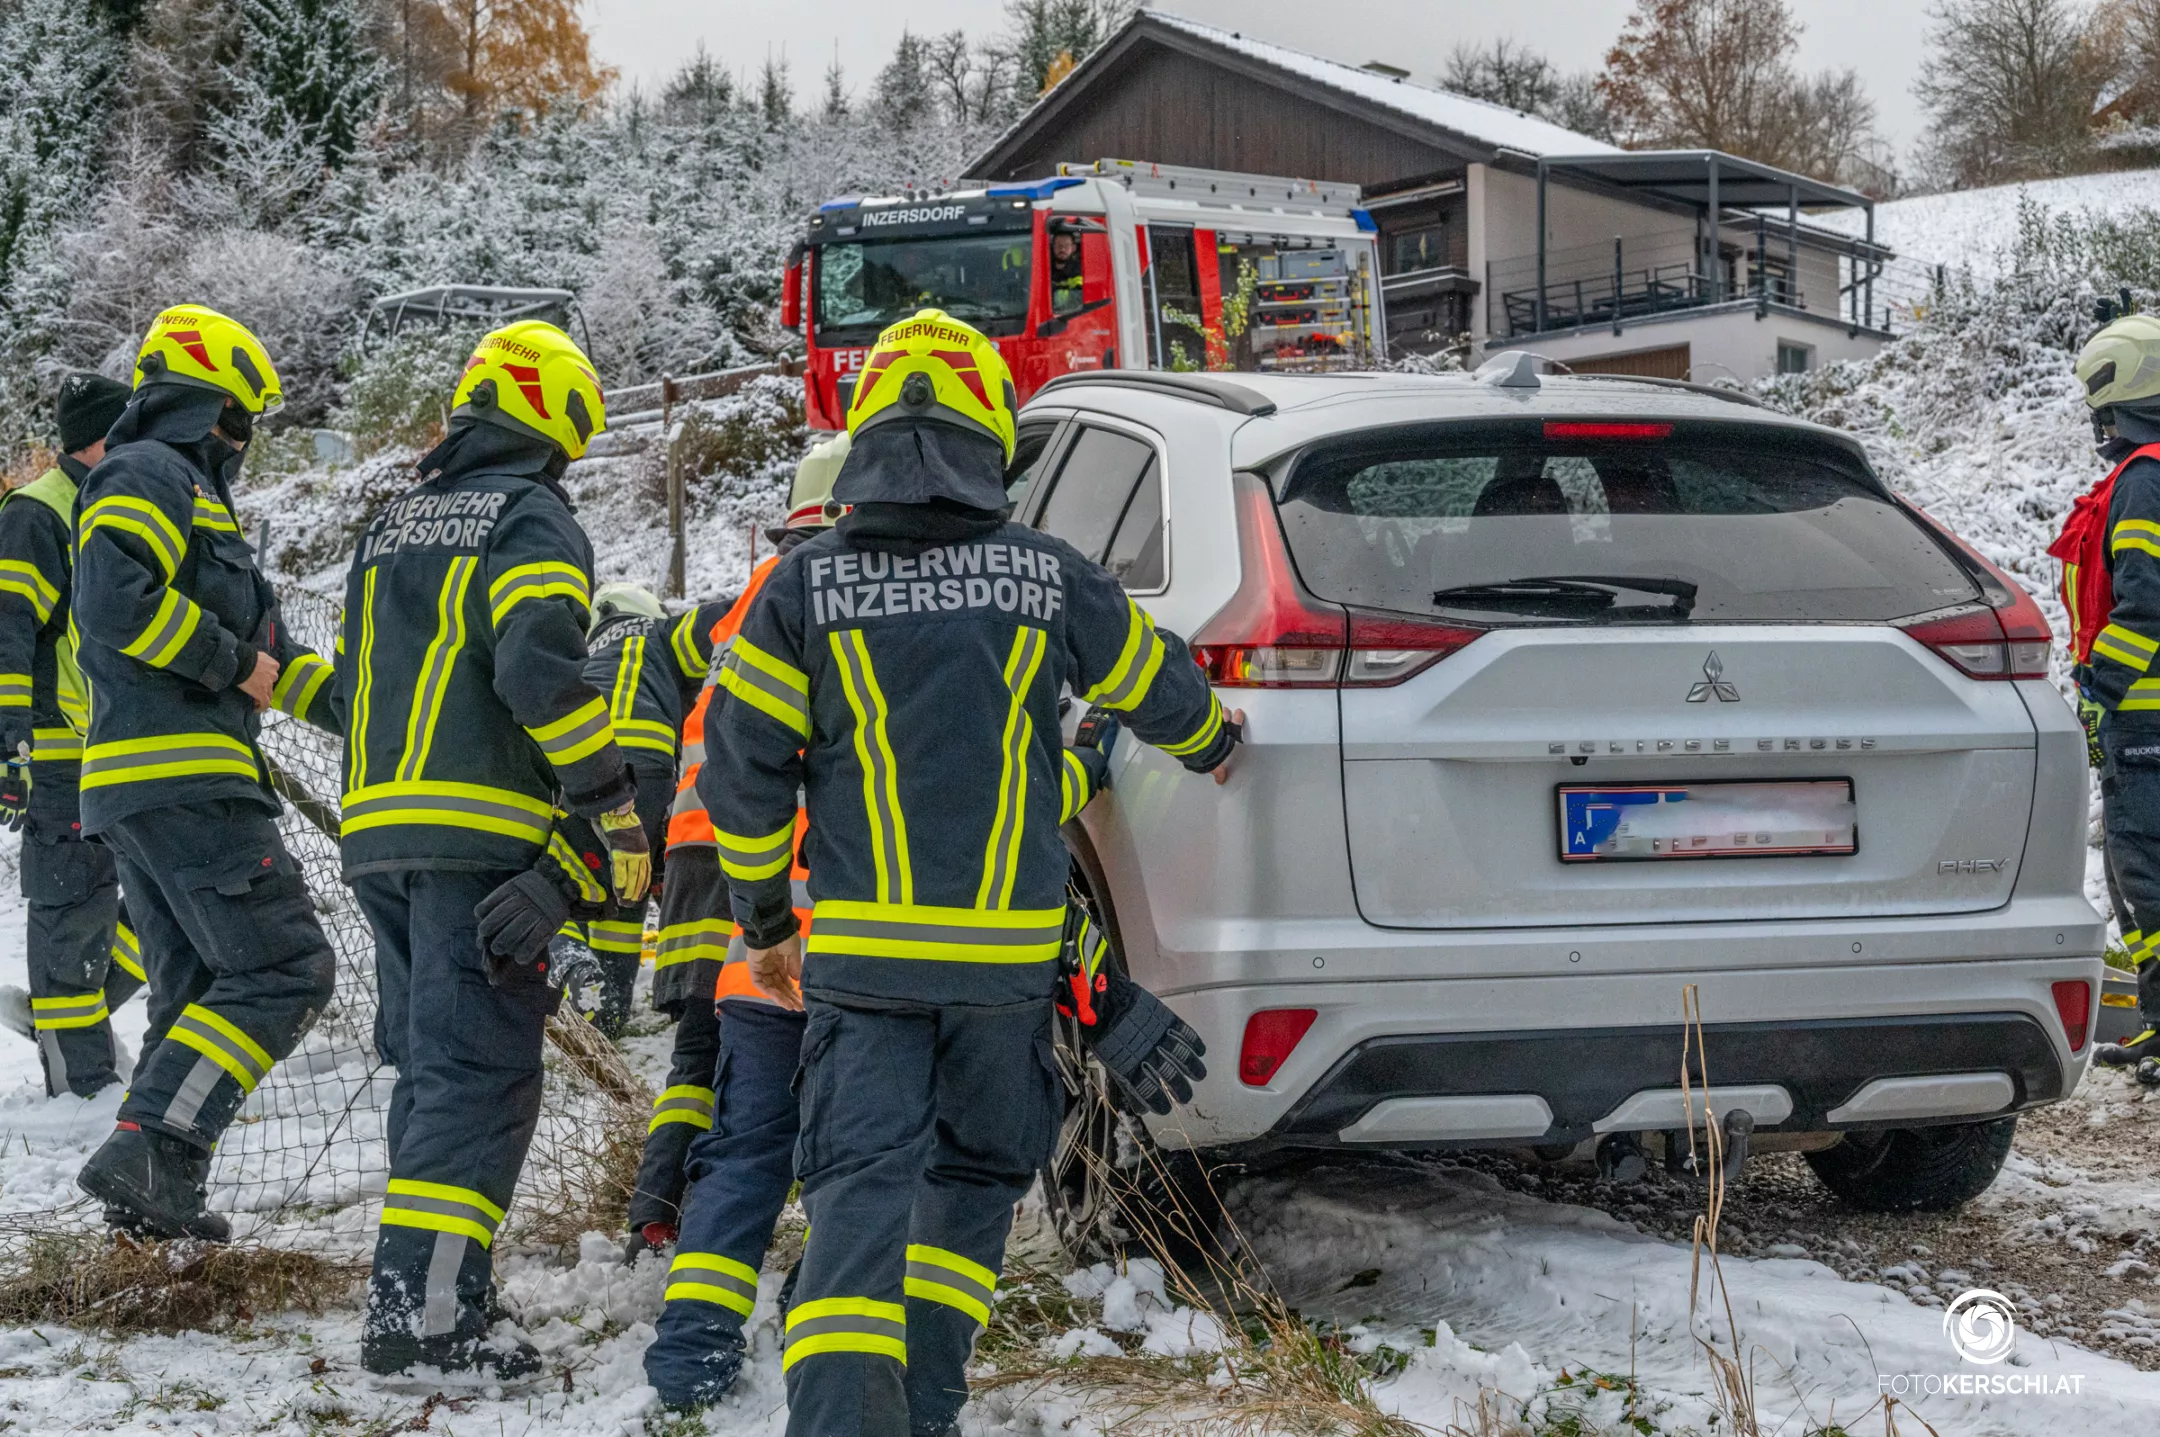 PKW rutscht gegen Gartenzaun - Feuerwehr Inzersdorf im Einsatz